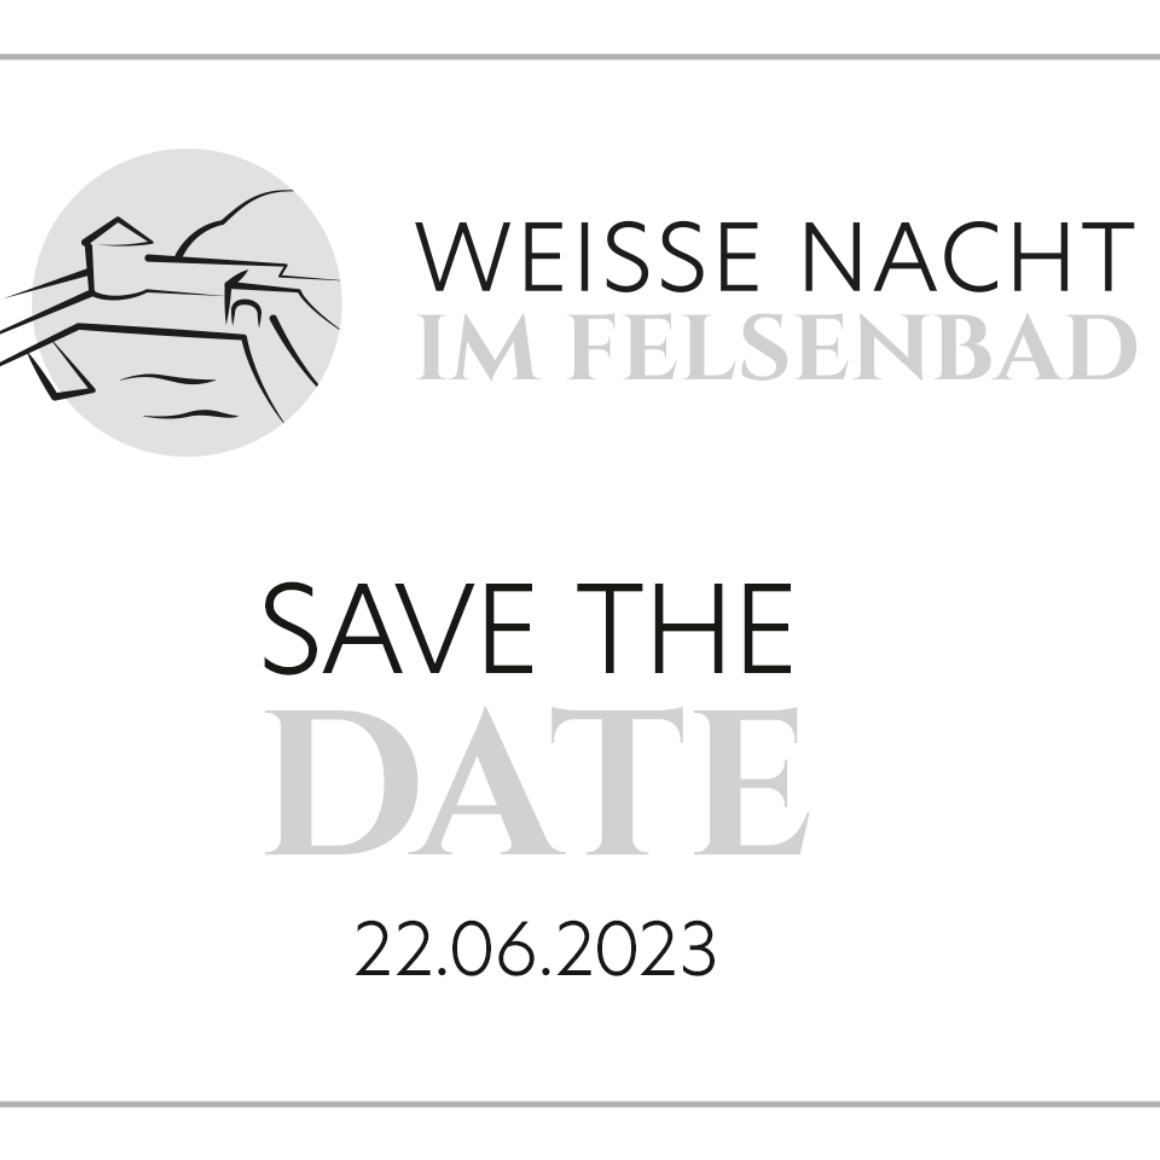 Save the Date - Weiße Nacht im Felsenbad 2023